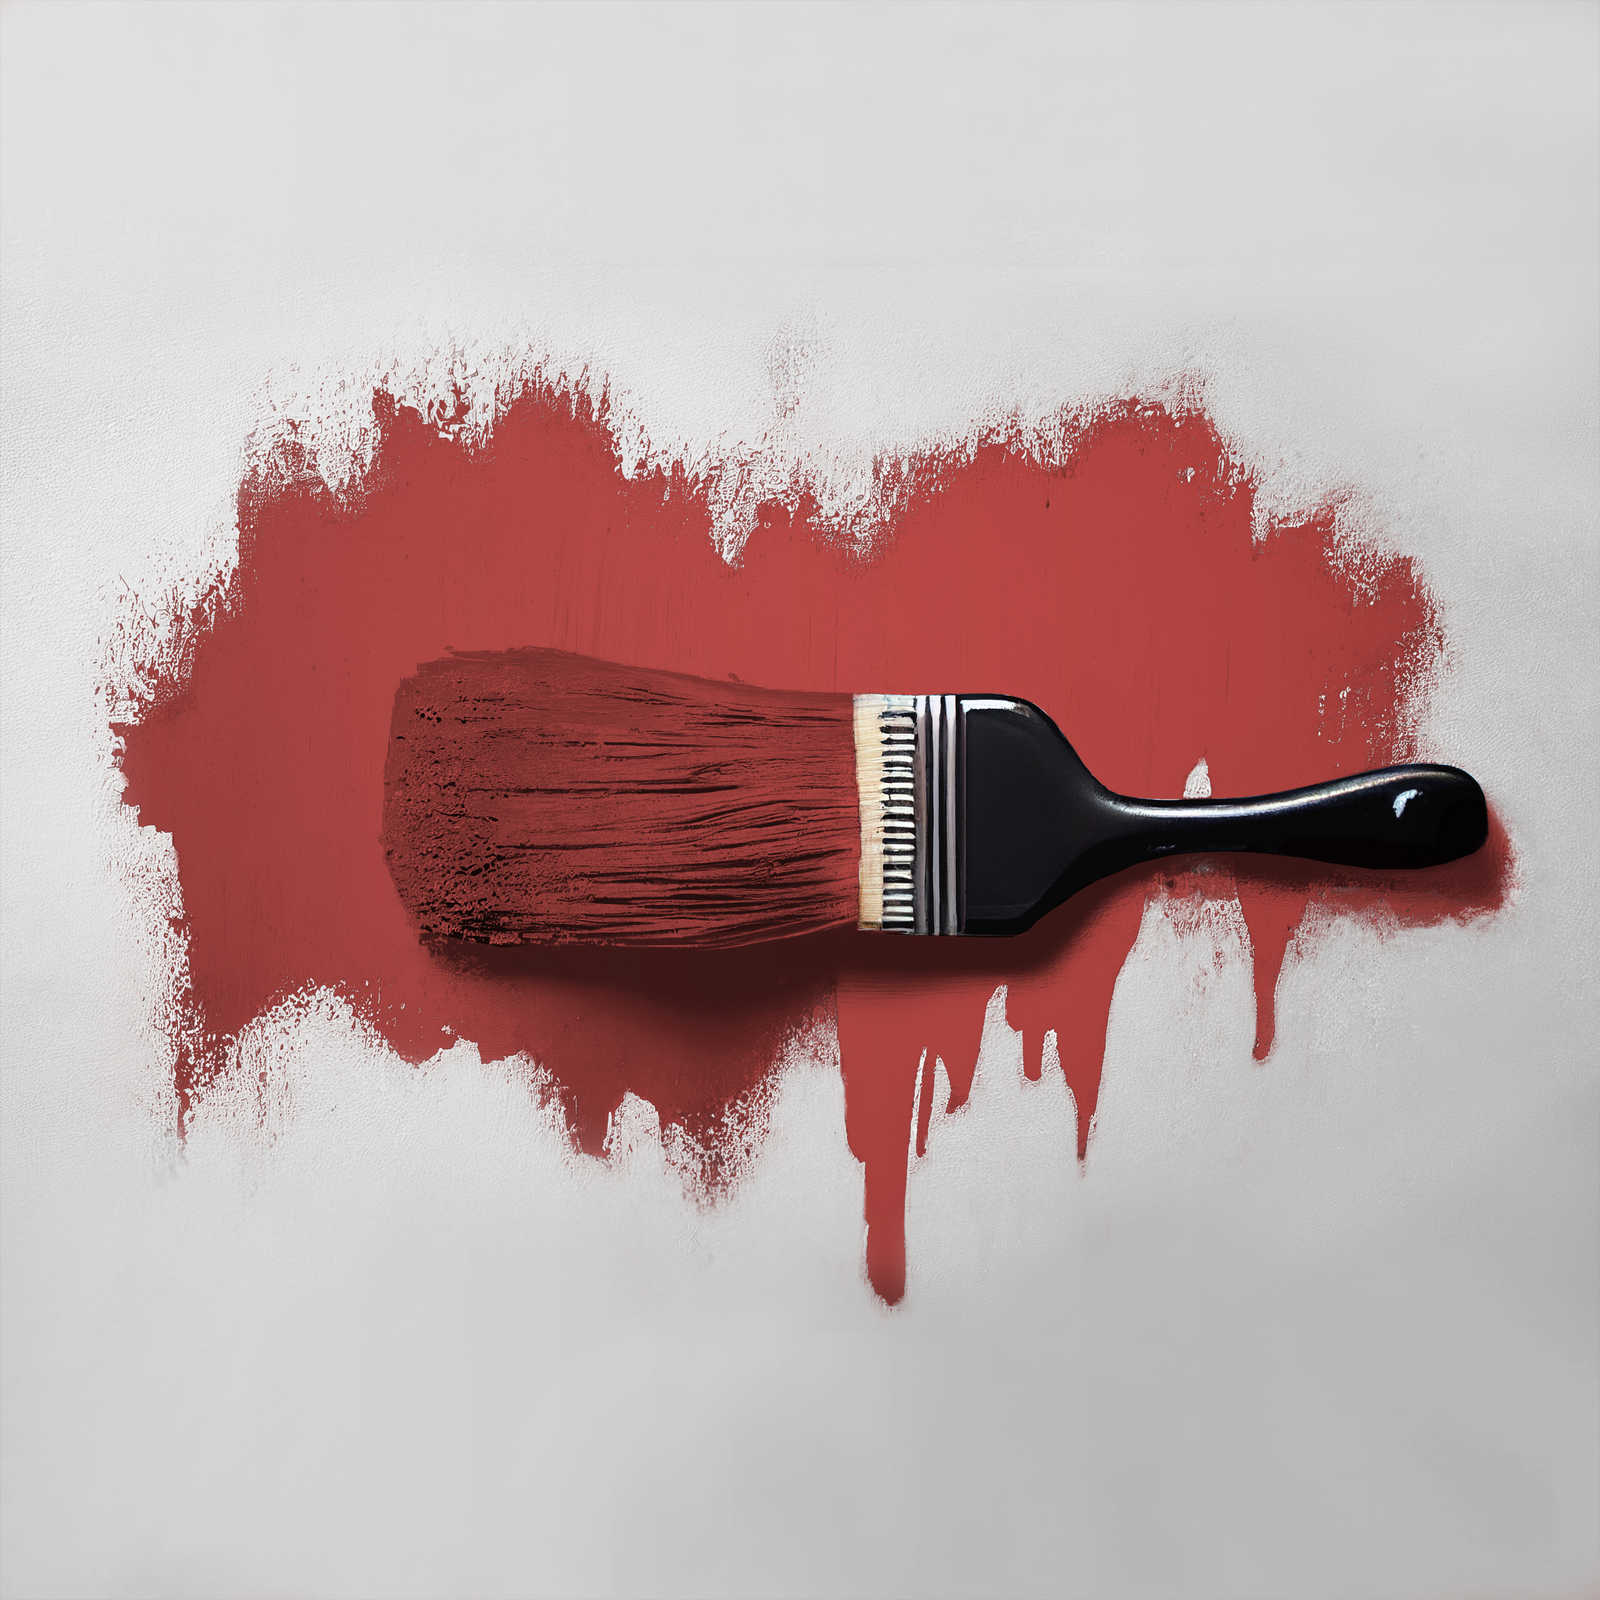             Pintura mural TCK7005 »Cheeky Chilli« en rojo fuego fuerte – 5,0 litro
        